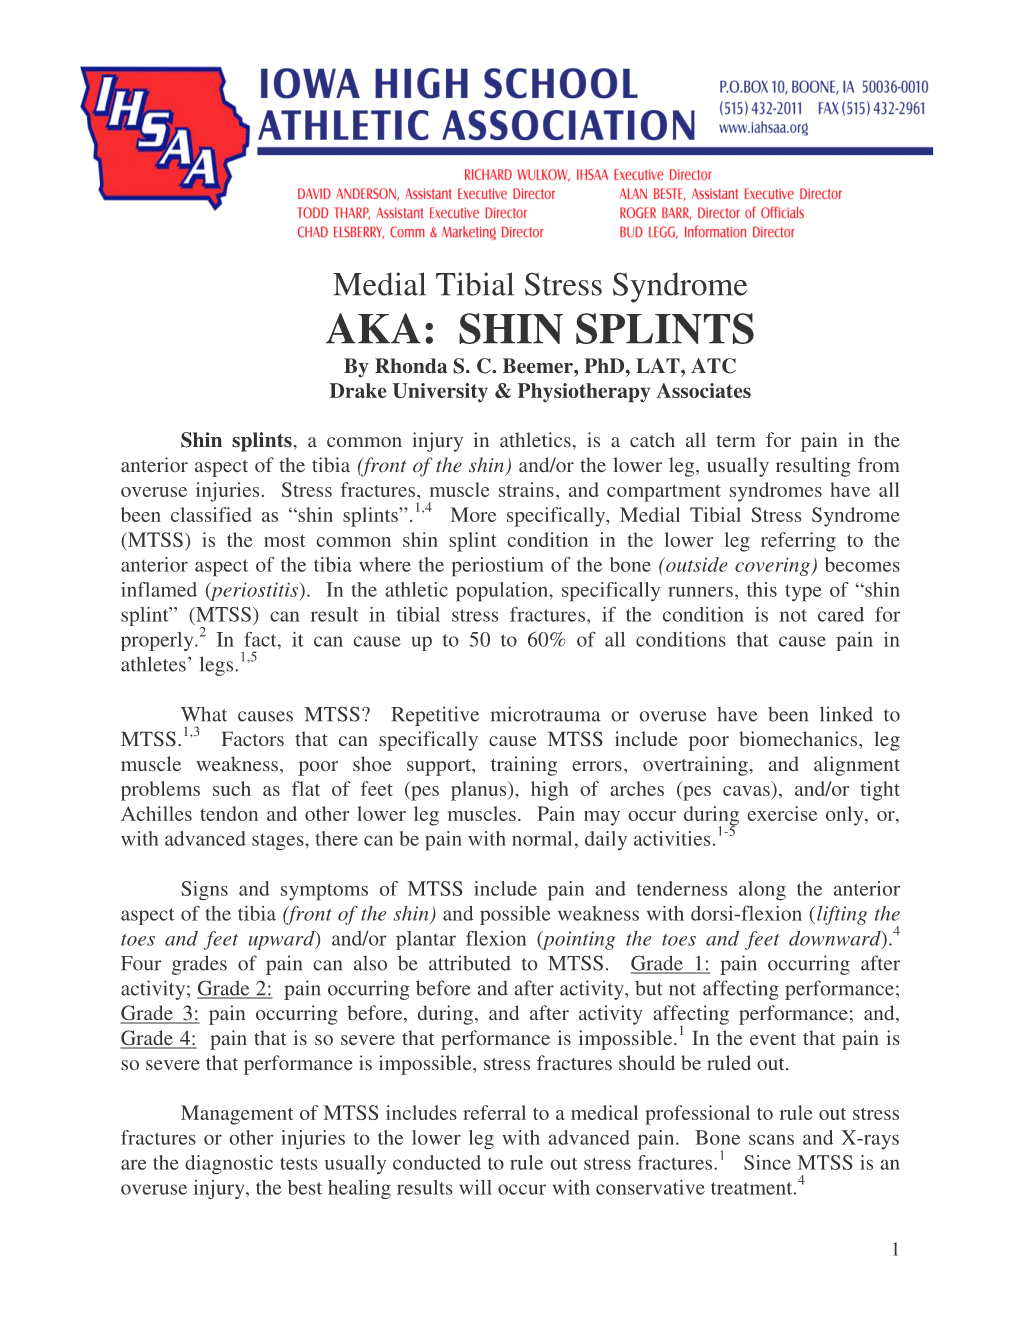 AKA: SHIN SPLINTS by Rhonda S